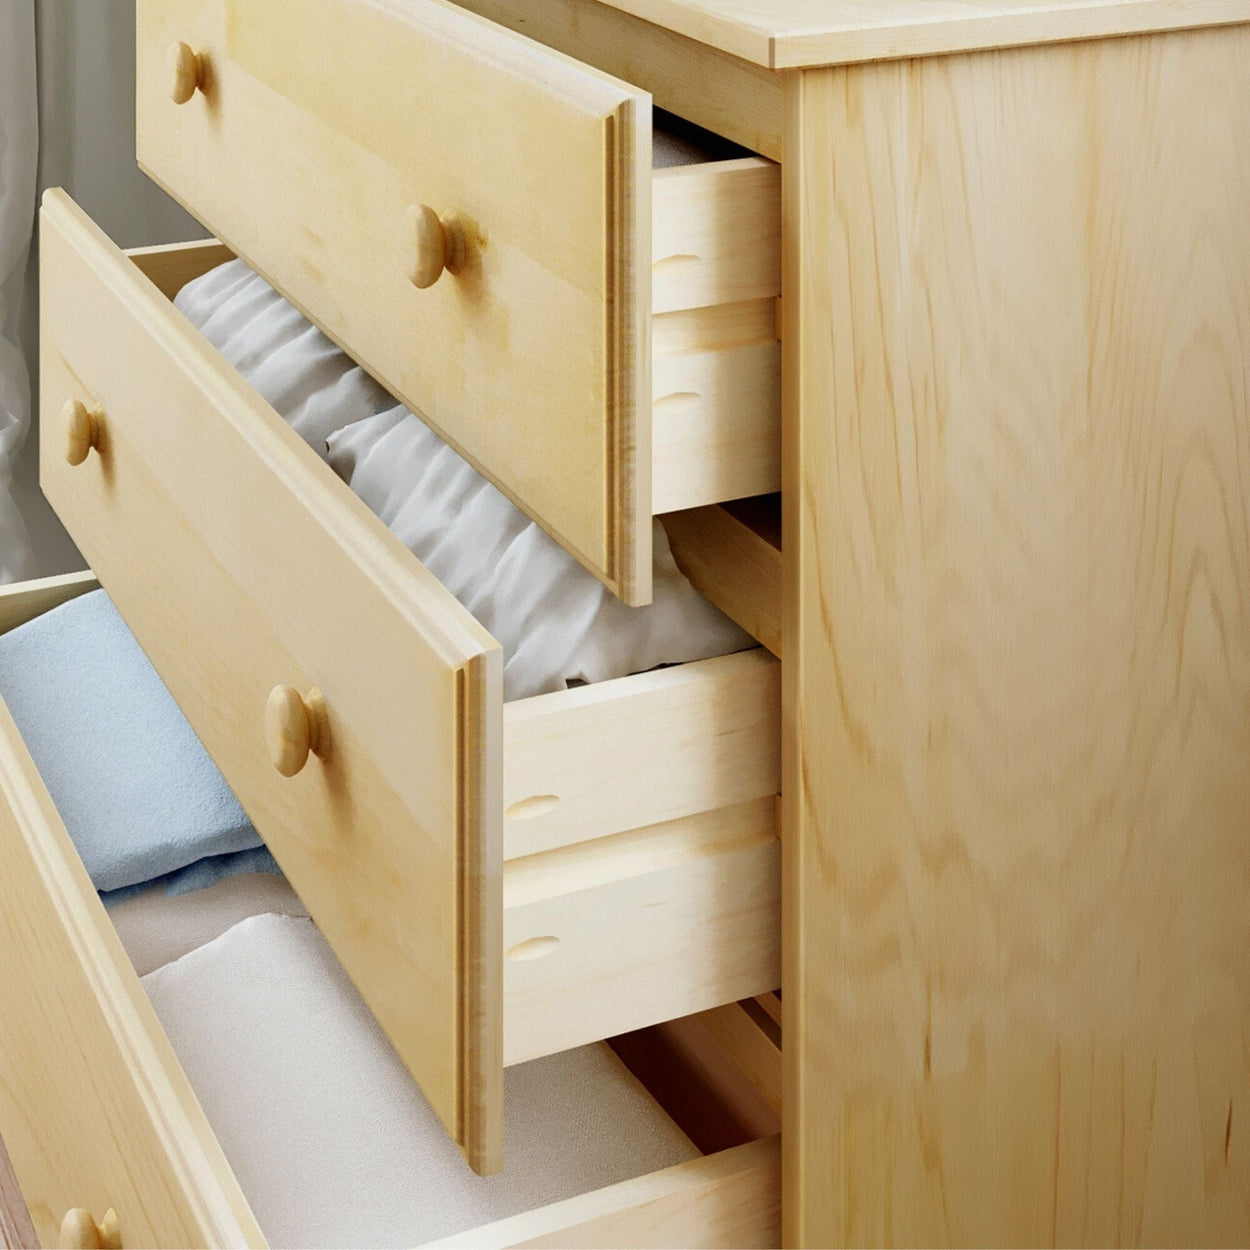 180013-001 : Furniture 3-Drawer Dresser, Natural